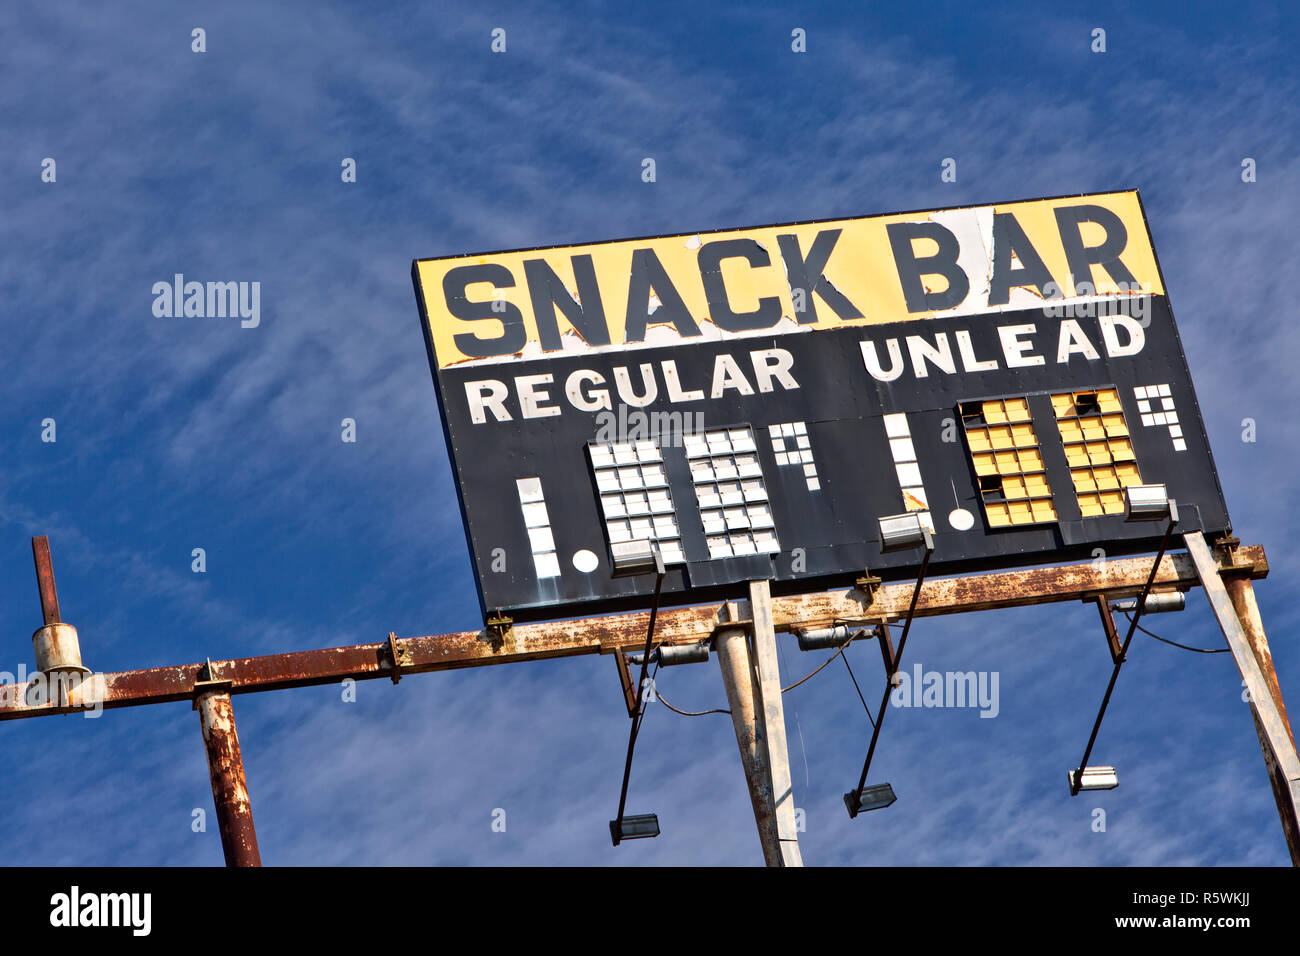 Erhöhte Vintage Gas Station anmelden nack Bar - regelmäßig - Unlead-Benzin, rostigen Metallrahmen, gegen eine verstreute blue sky. Stockfoto